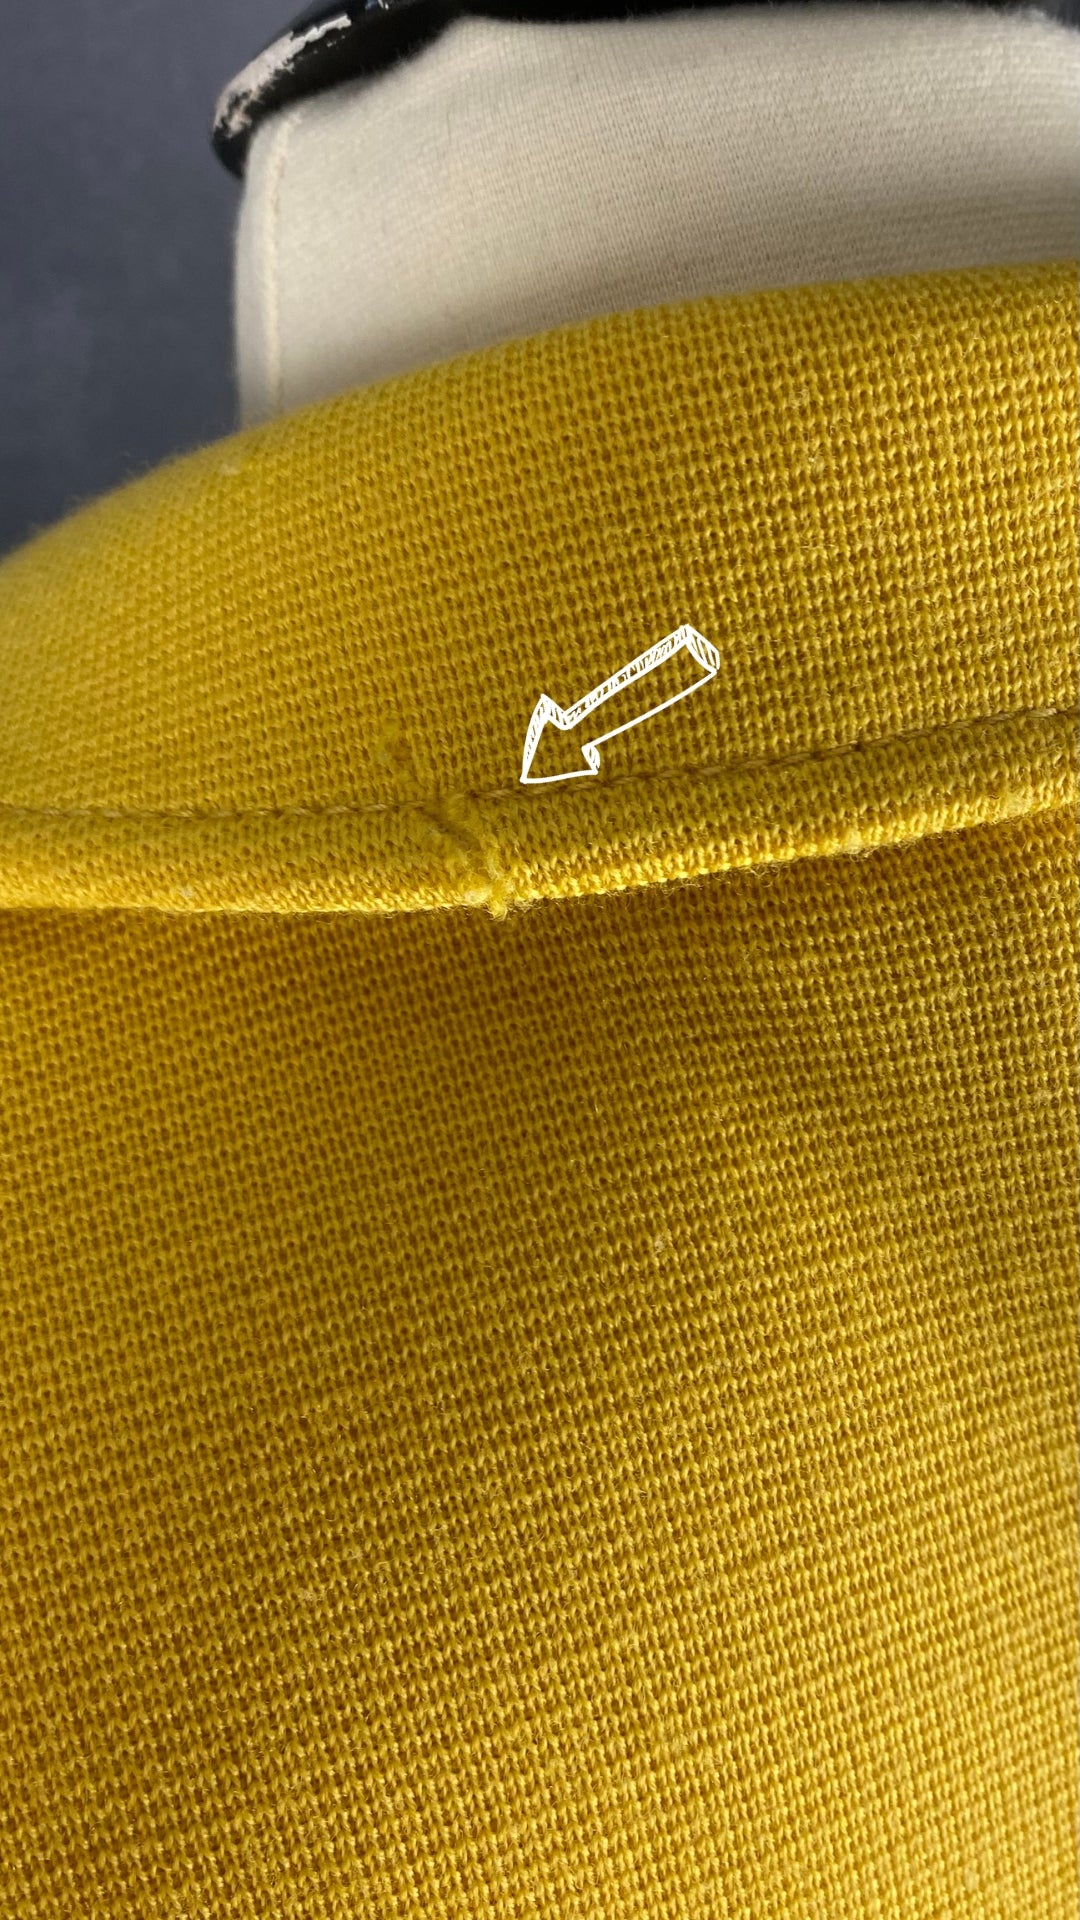 Veste style blazer jaune doré en laine Luisa Spagnoli, taille small. Vue d'une petite imperfection style accroc au col au dos.